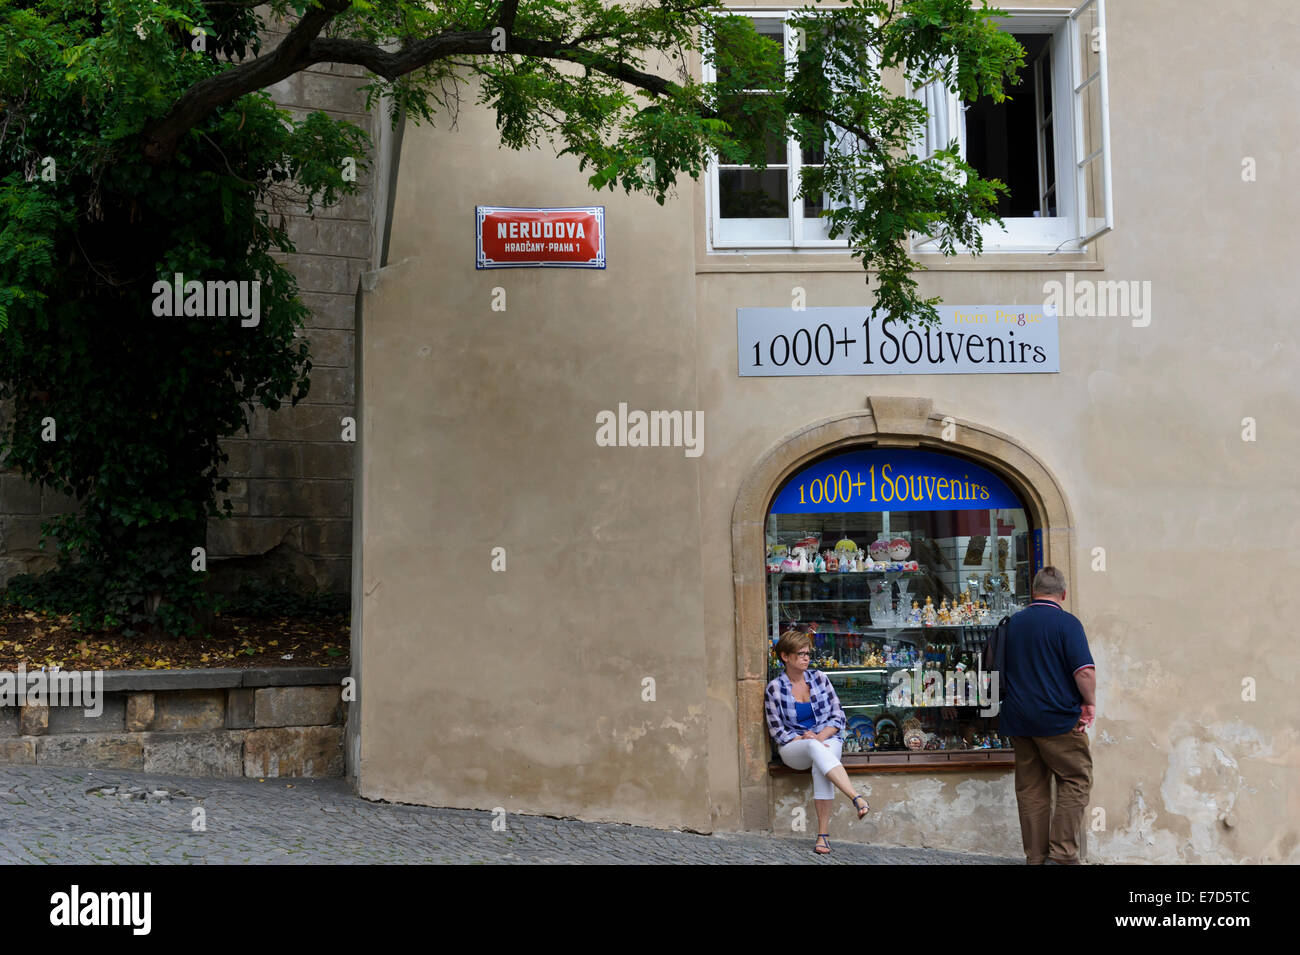 Touristen vor einen Souvenir-Shop in der City von Prag, Tschechien. Stockfoto